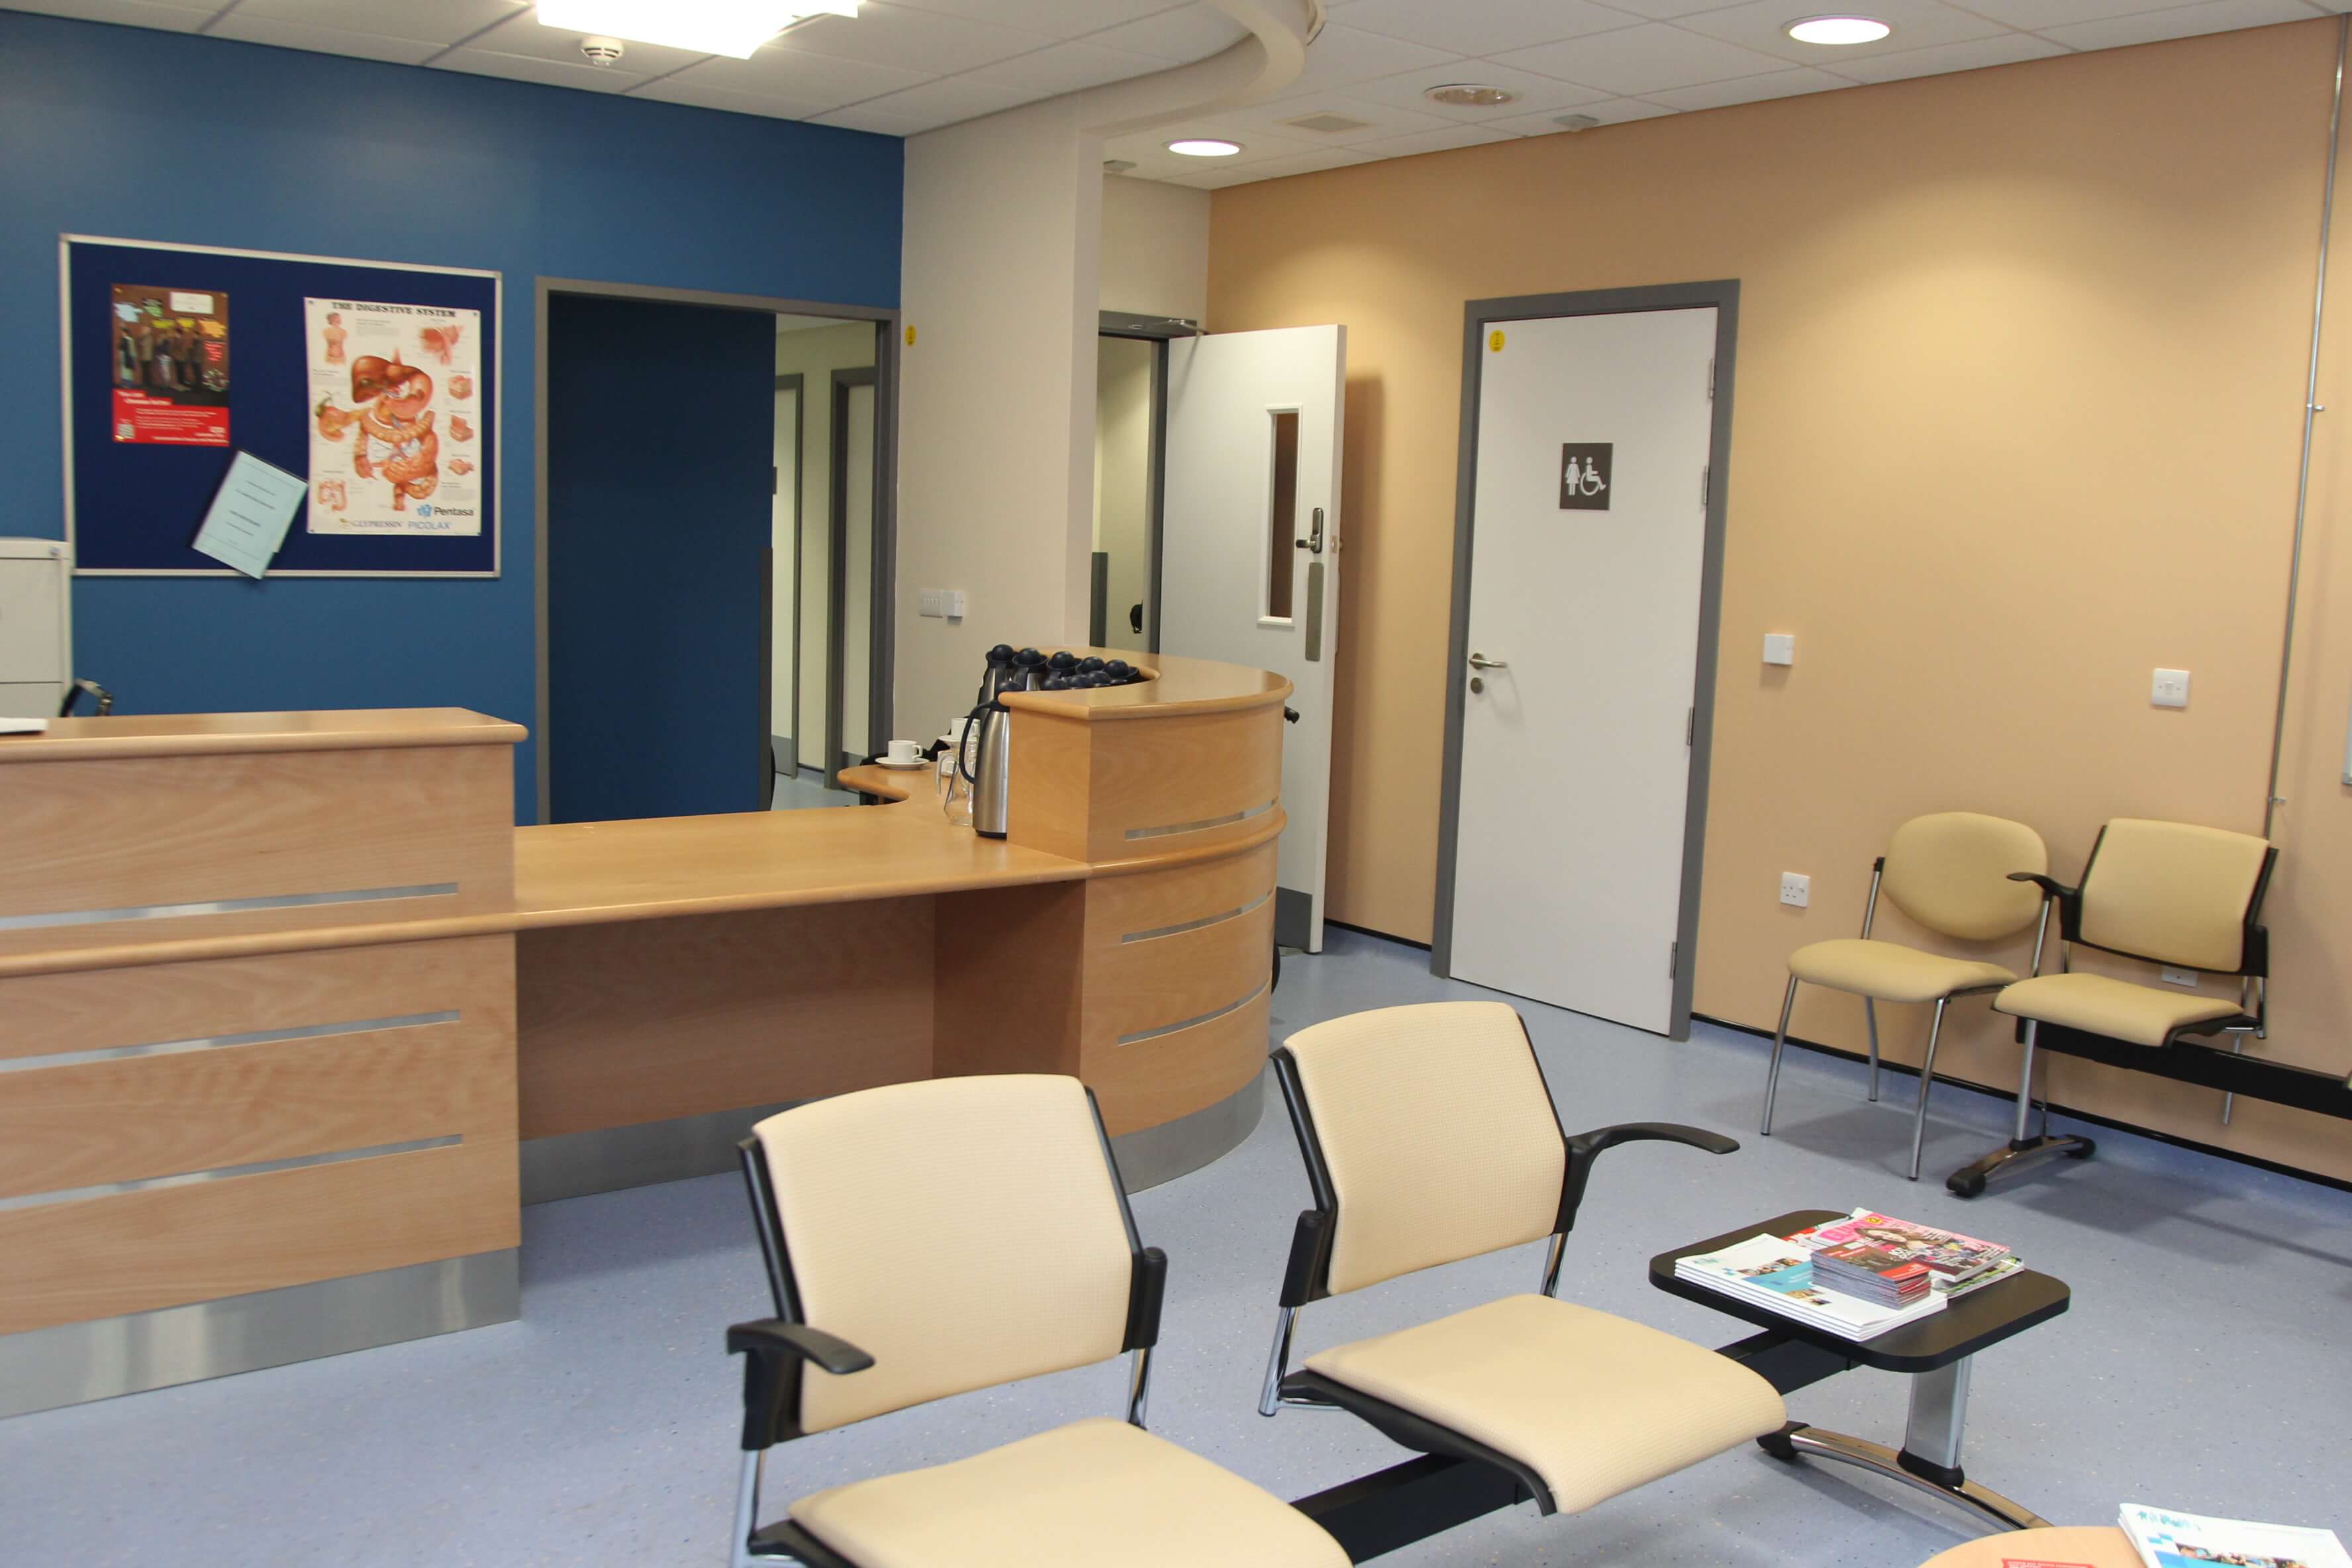 Hospital & GP Surgery waiting room floors